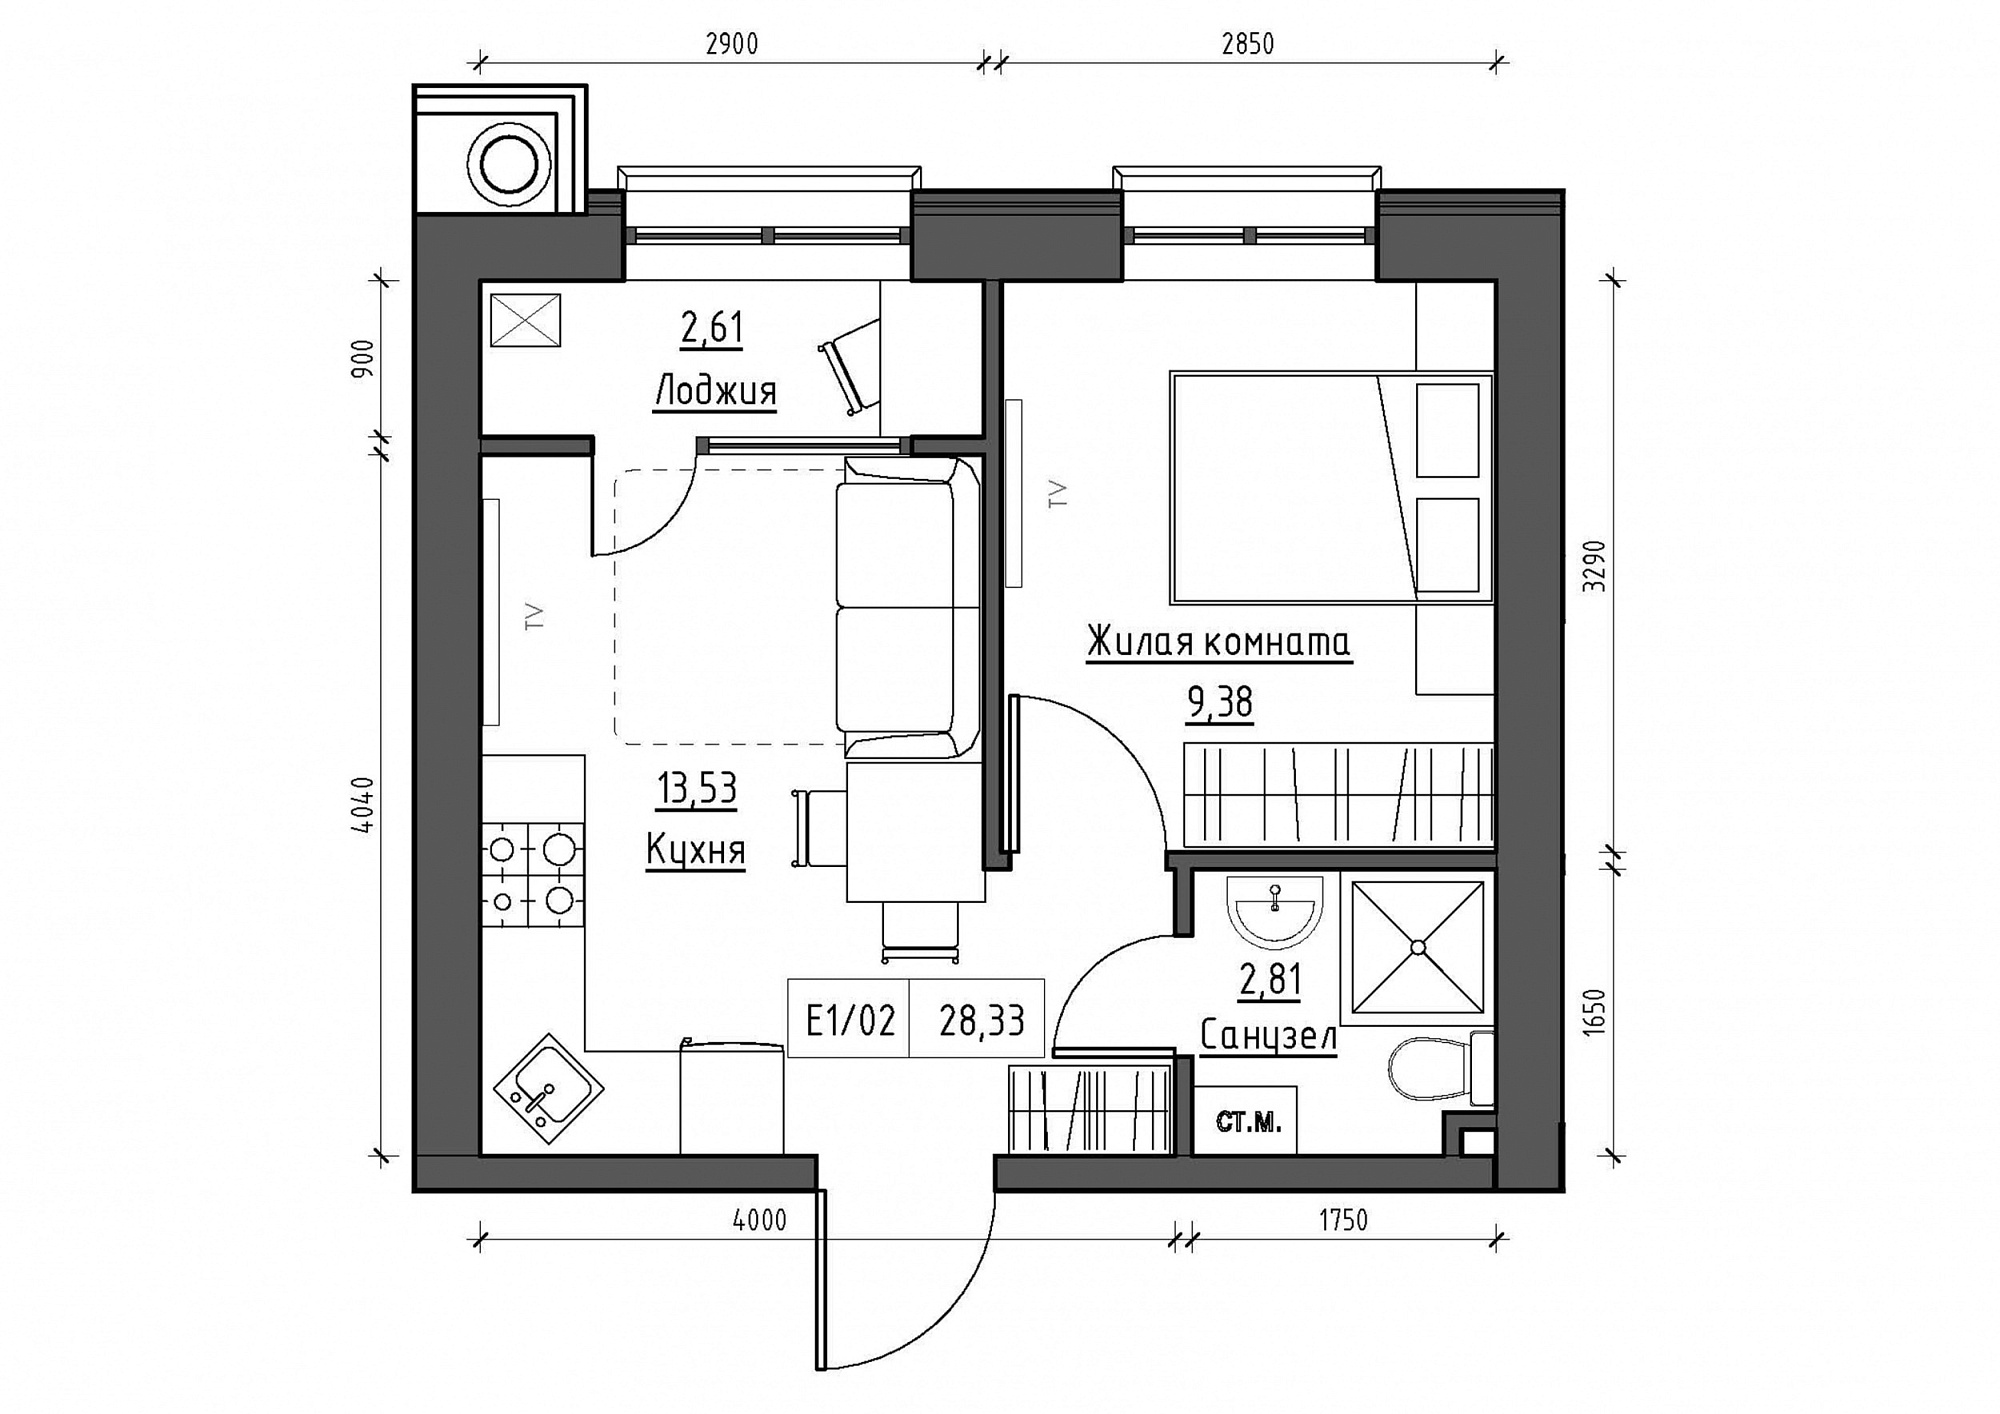 Планировка 1-к квартира площей 28.33м2, KS-011-03/0015.